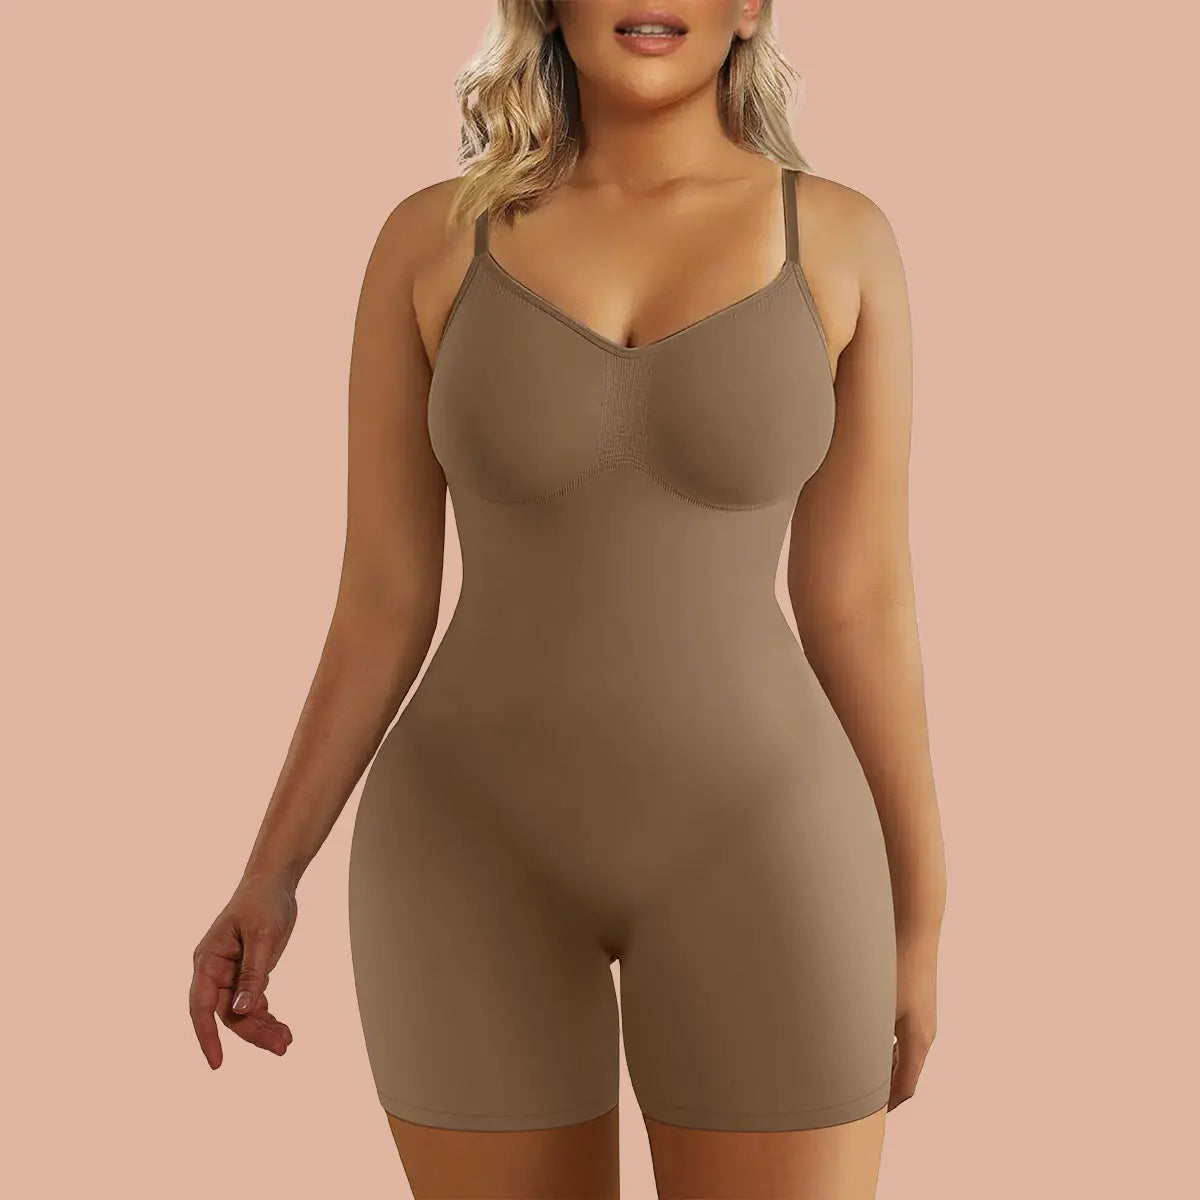 SHAPERX Bodysuit for Women Tummy Control Shapewear Comoros